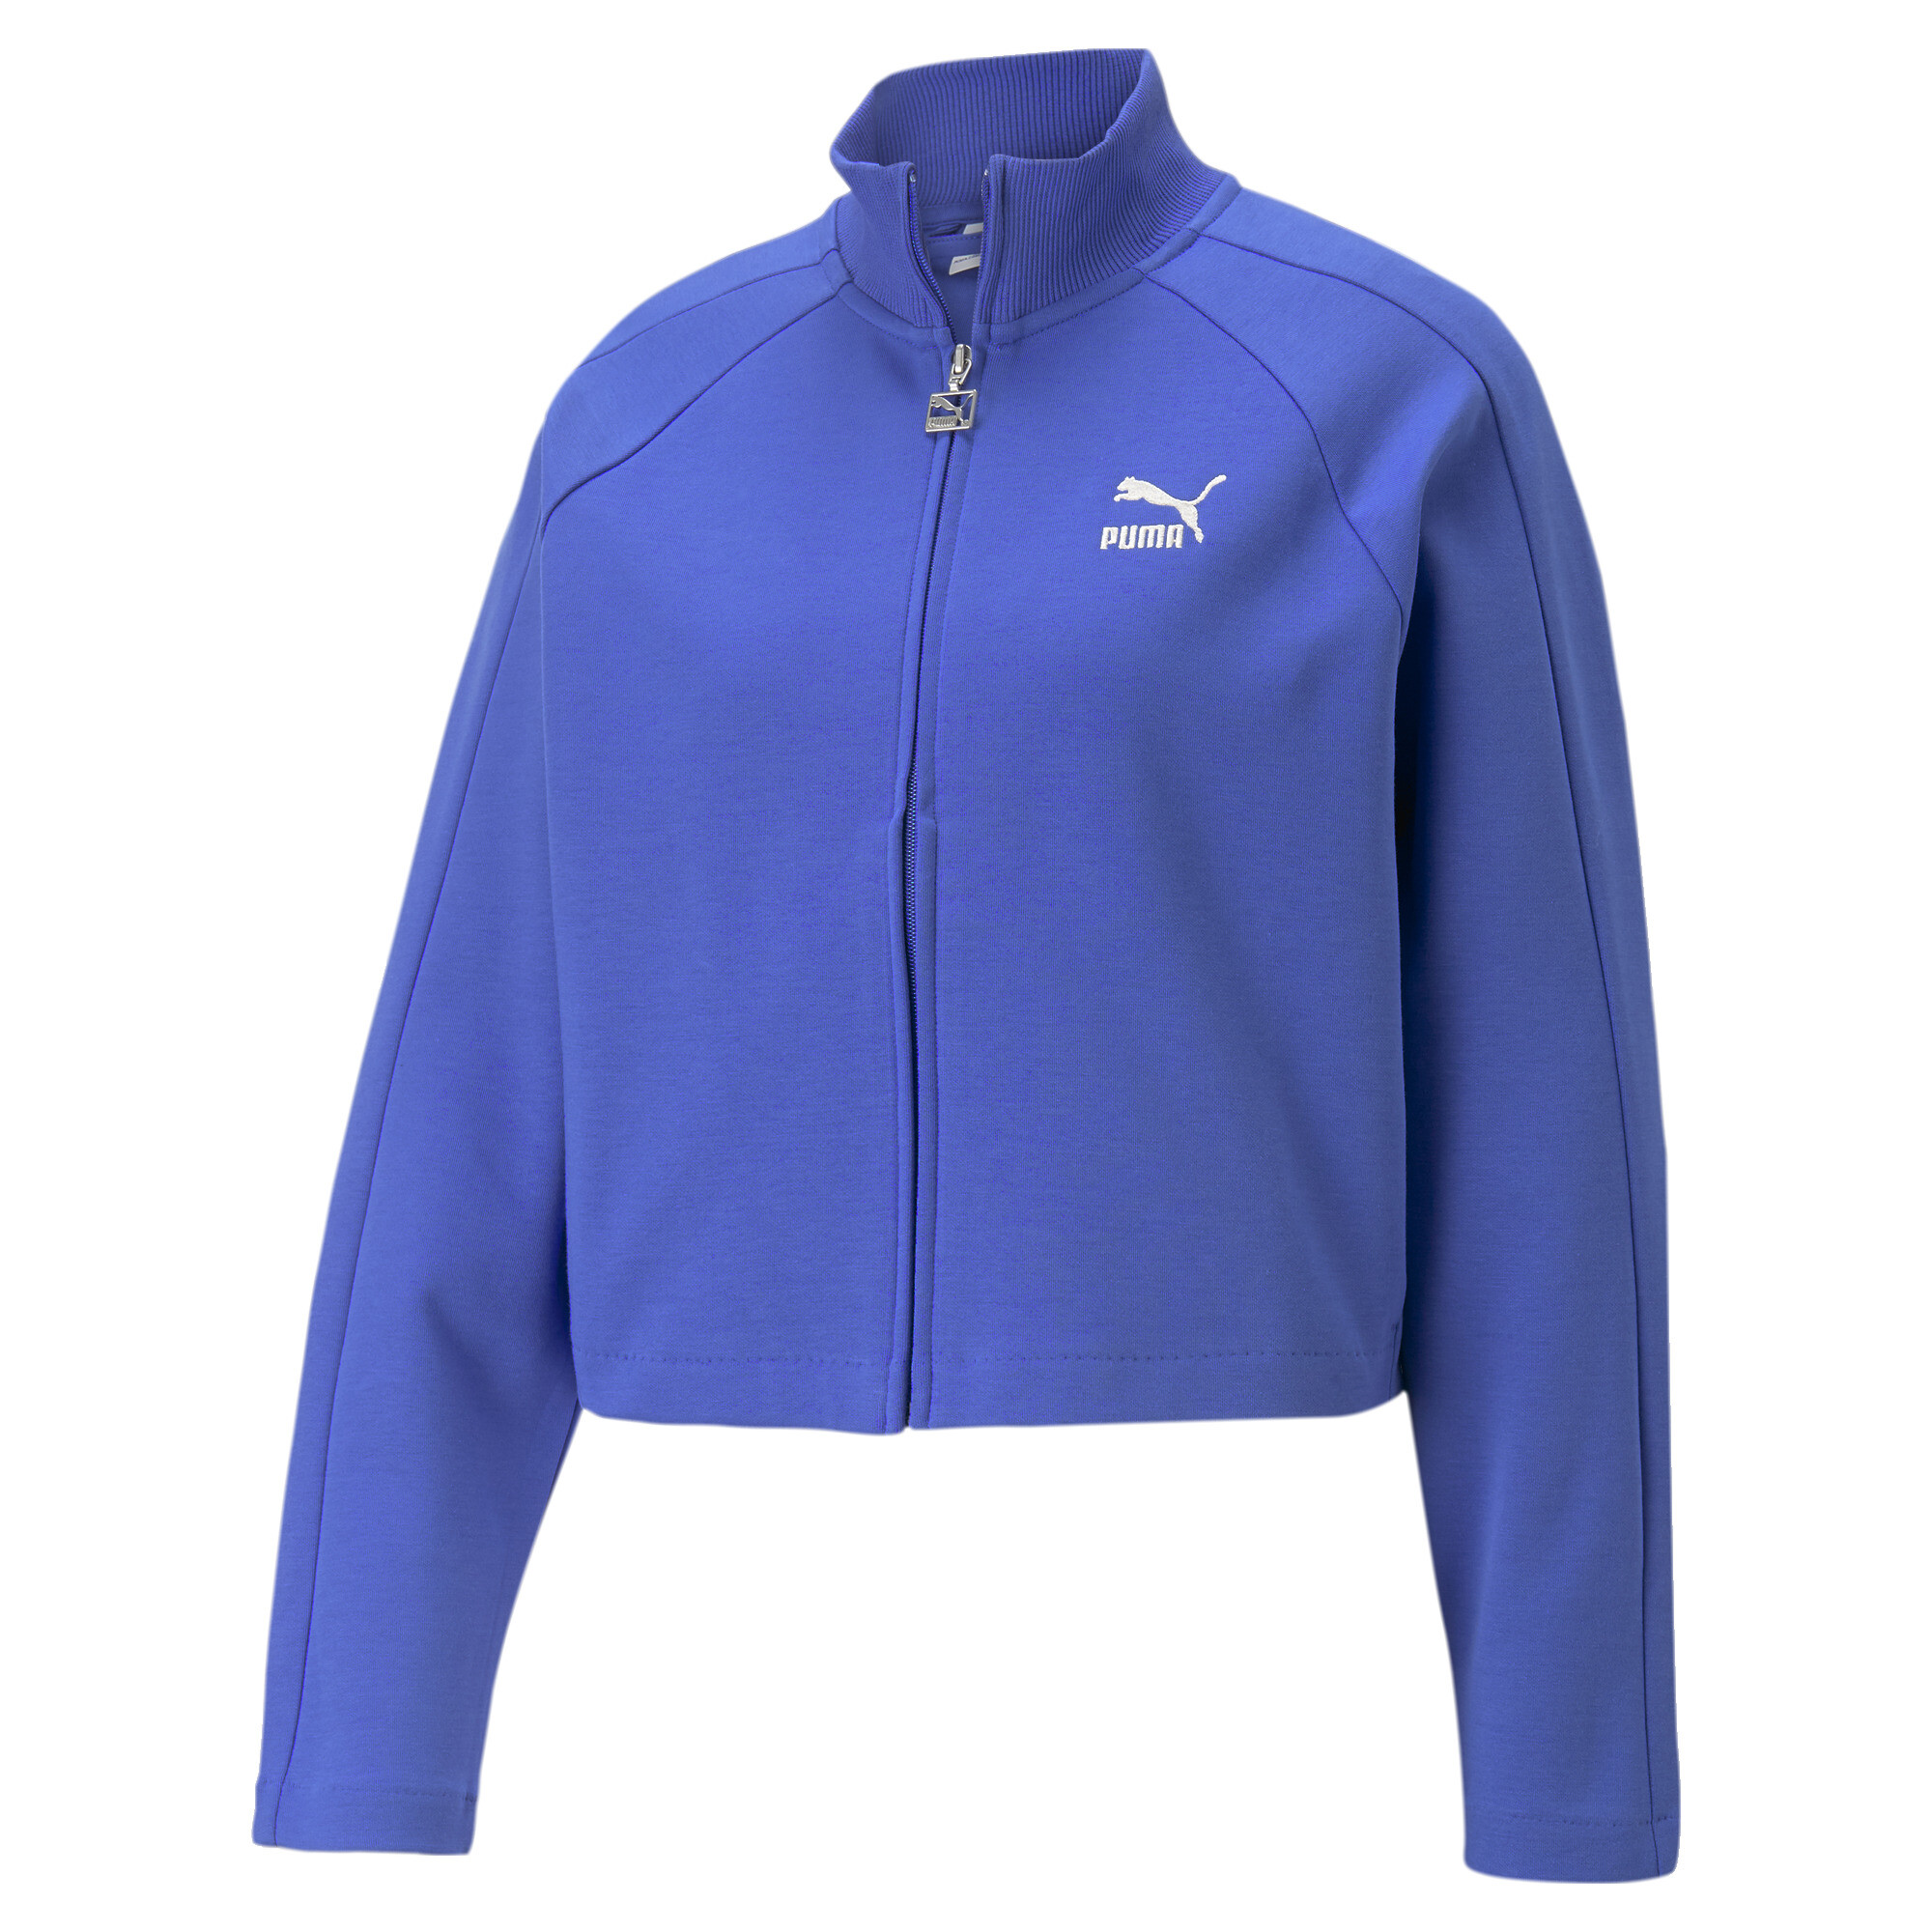 Women's PUMA T7 Track Jacket Women In Blue, Size Large